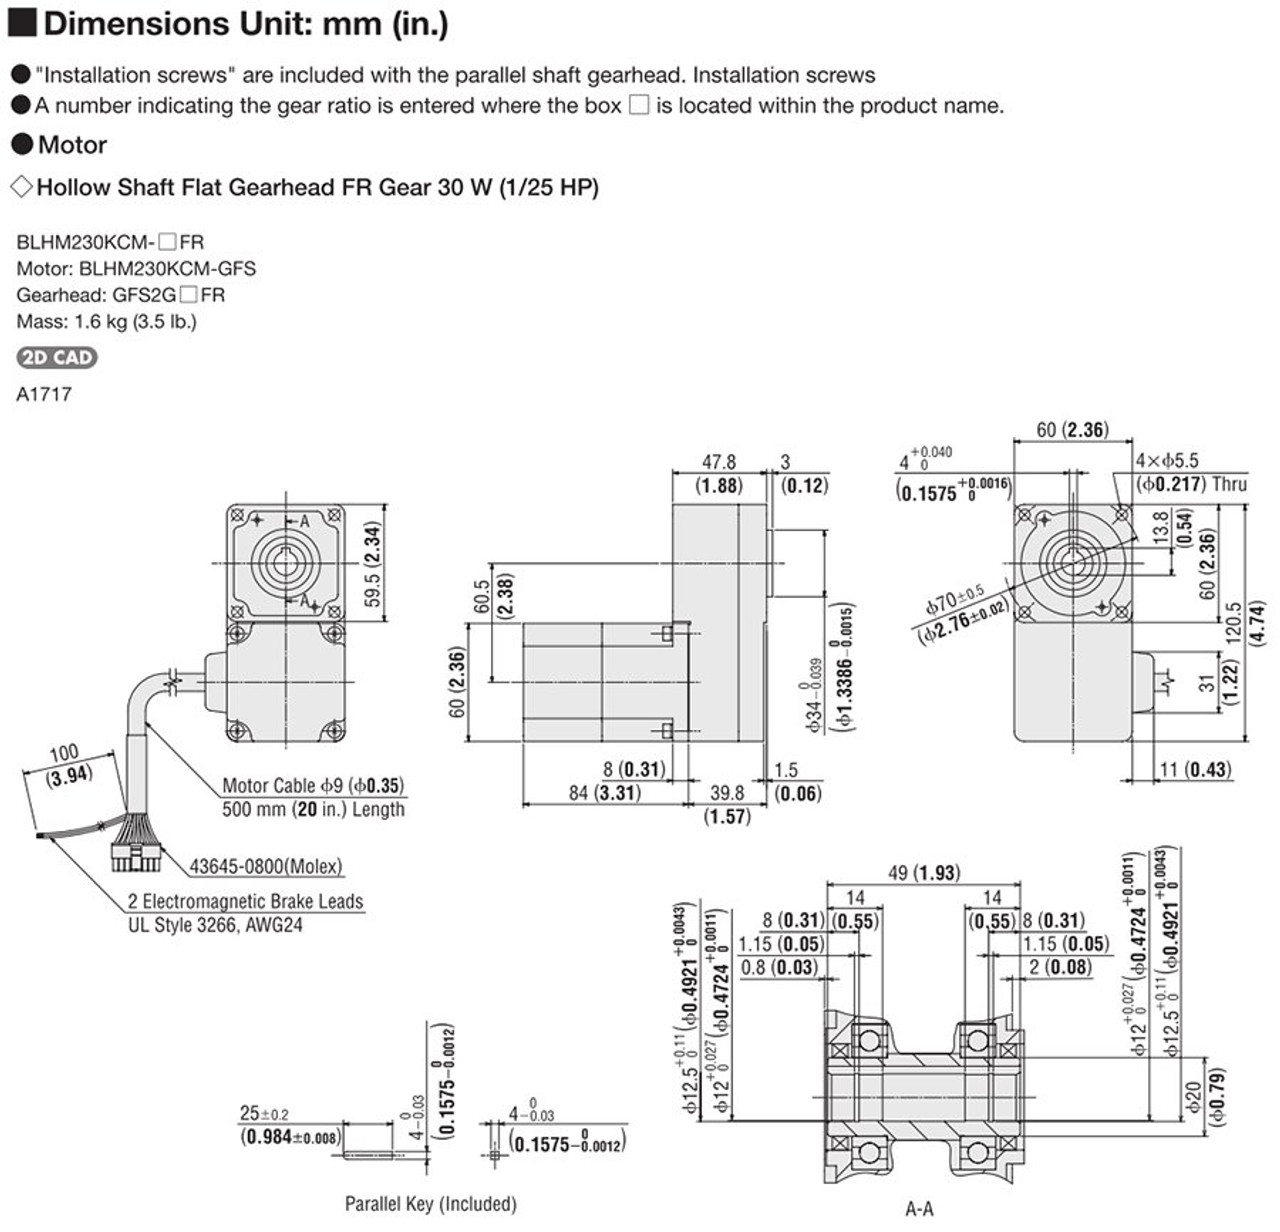 BLHM230KCM-15FR / BLH2D30-K - Dimensions